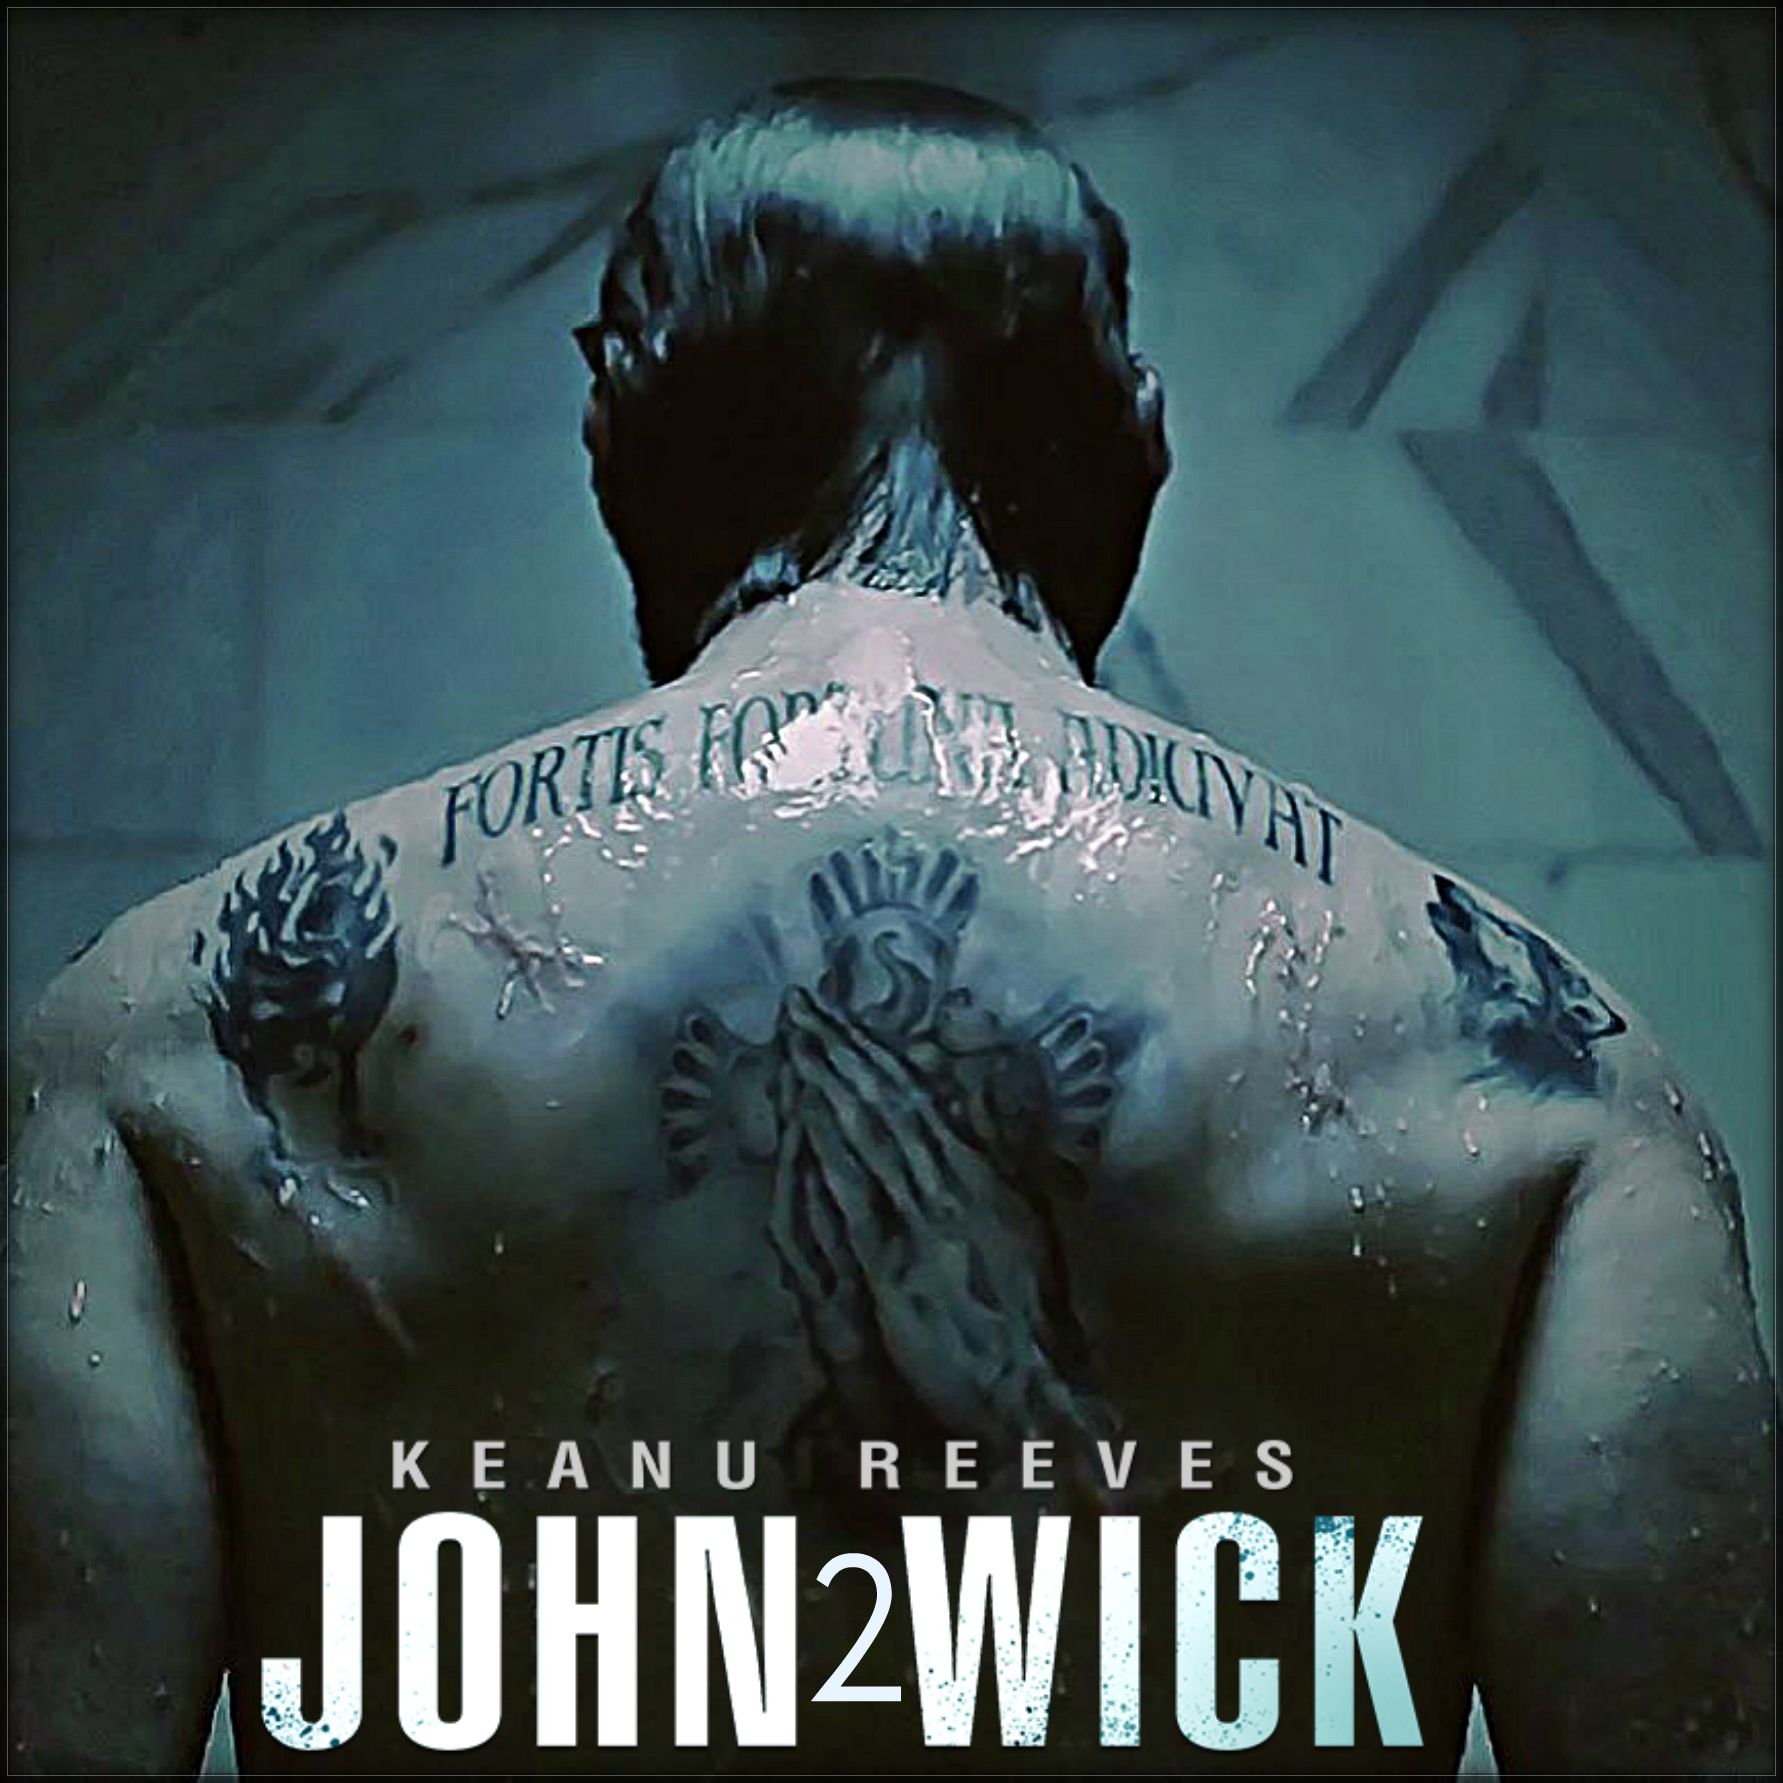 Happy Saturday and waiting to hear from John Wick 2 Sábado y a la espera de saber de John Wick 2. John wick tattoo, Keanu reeves, Keanu reeves john wick